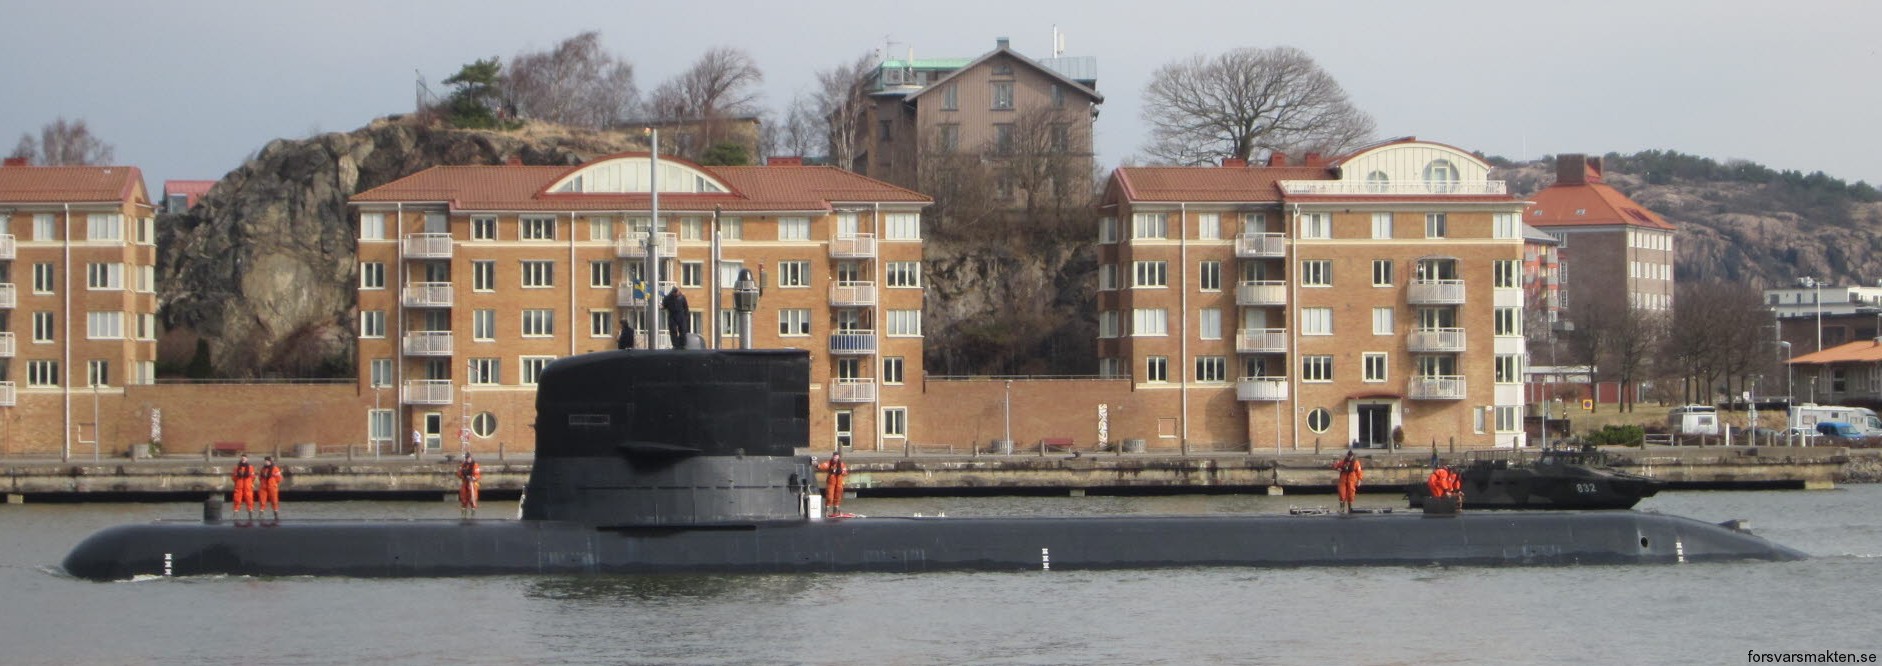 hswms hms sodermanland söd a17 vastergotland class submarine ssk swedish navy svenska marinen försvarsmakten kockums 18